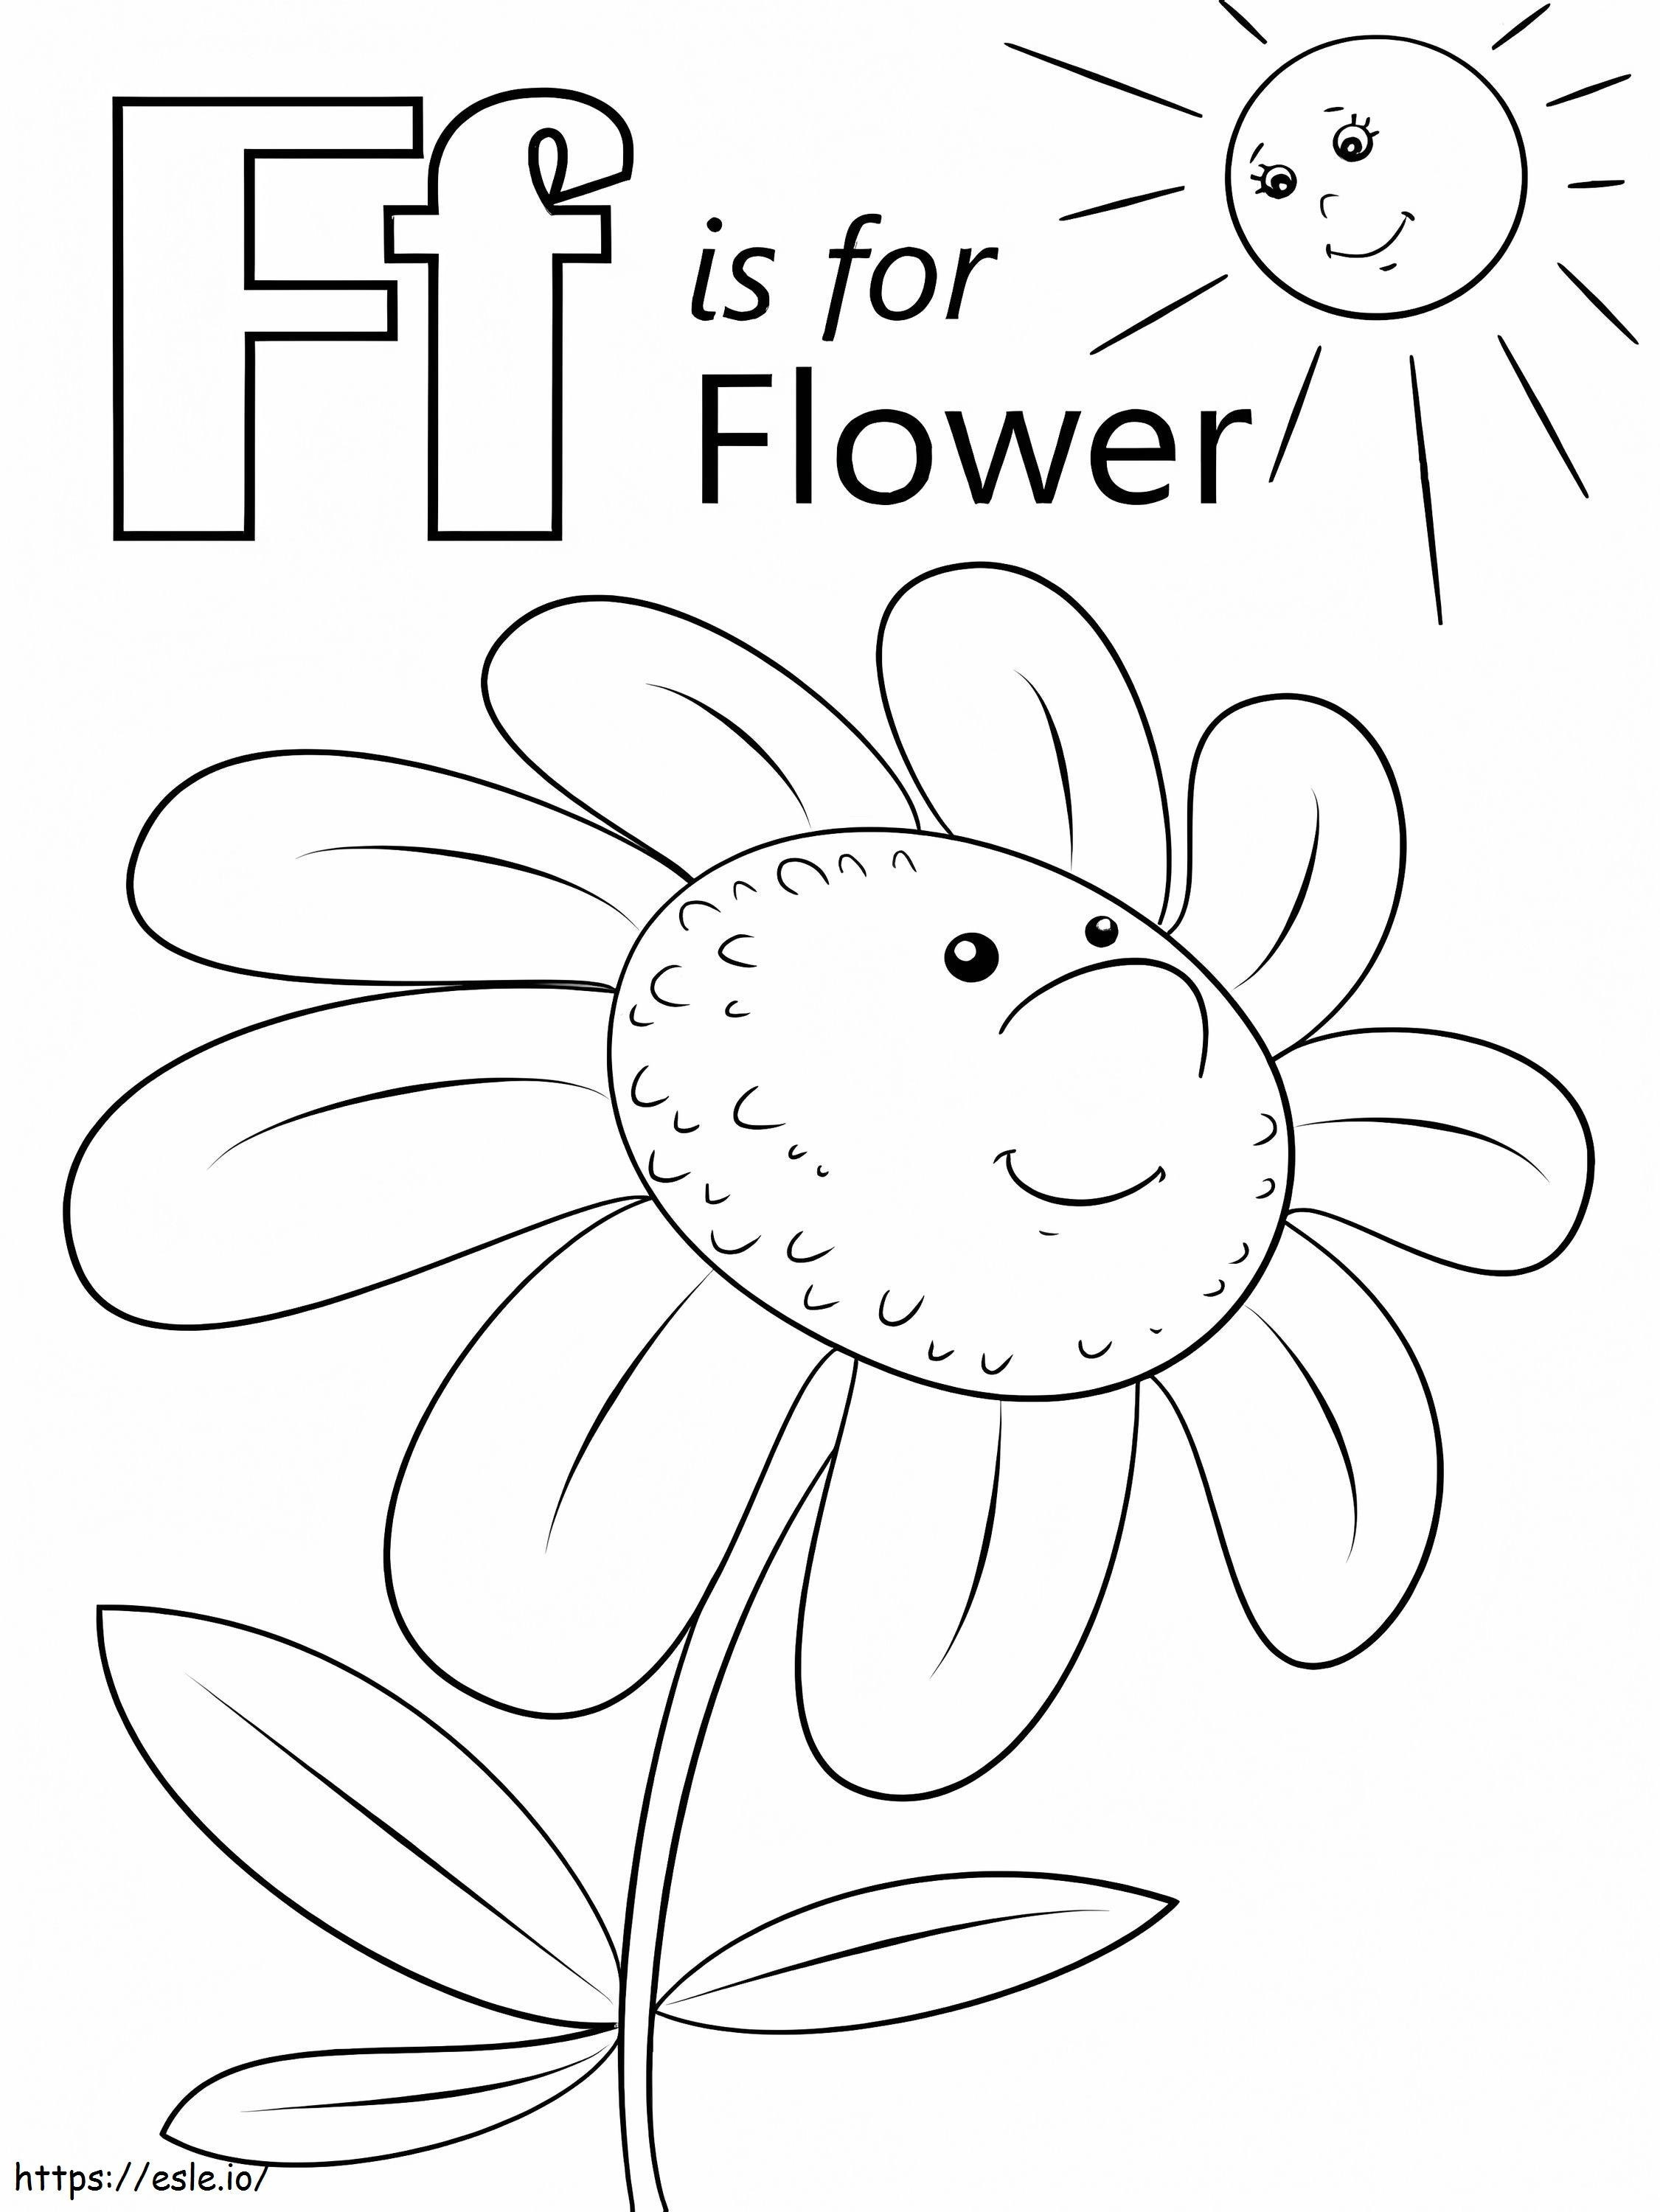 Letra floral F para colorear